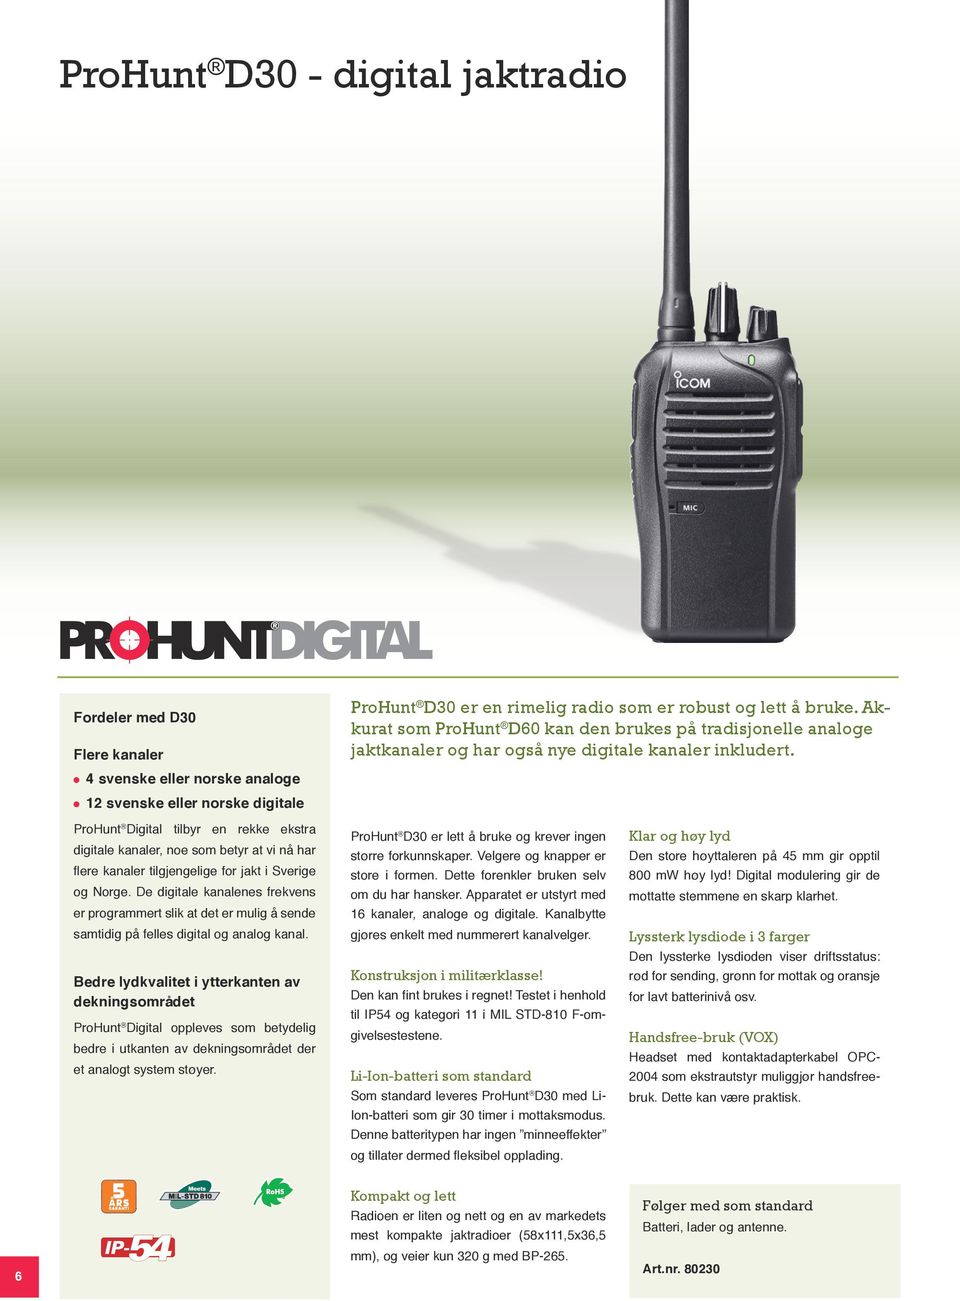 ProHunt Digital tilbyr en rekke ekstra digitale kanaler, noe som betyr at vi nå har flere kanaler tilgjengelige for jakt i Sverige og Norge.